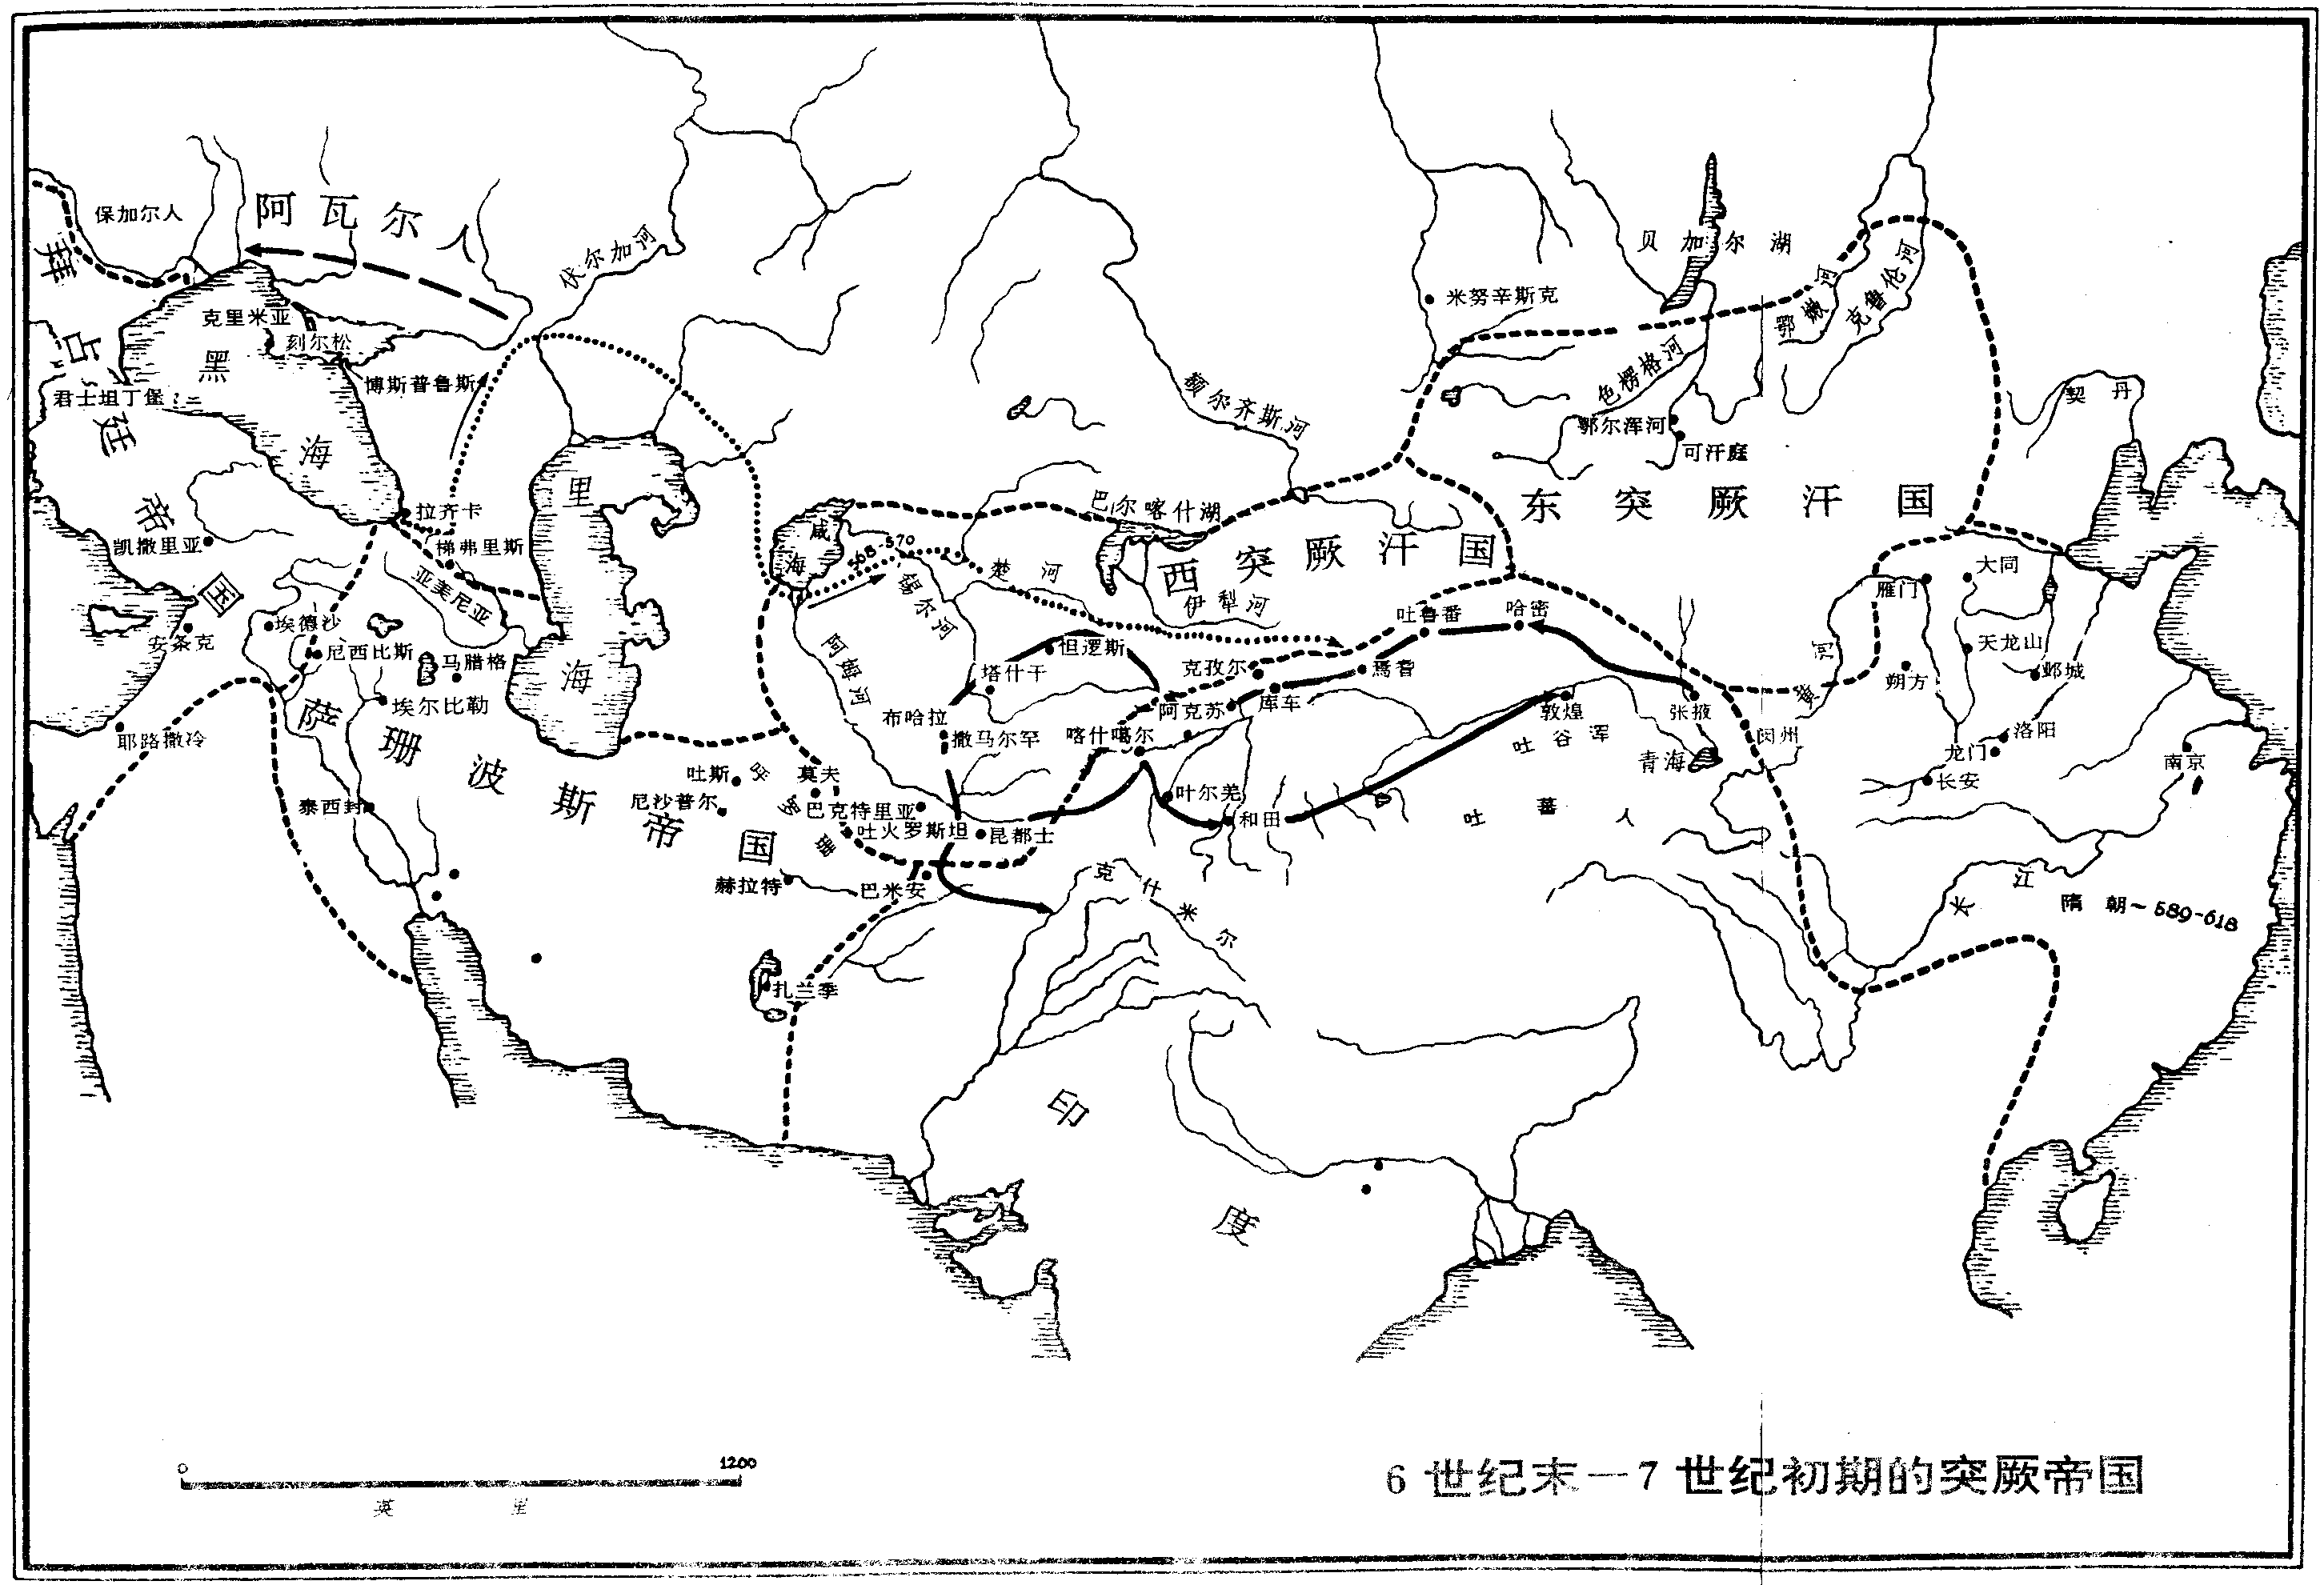 6世紀-7世紀初期的突厥帝國